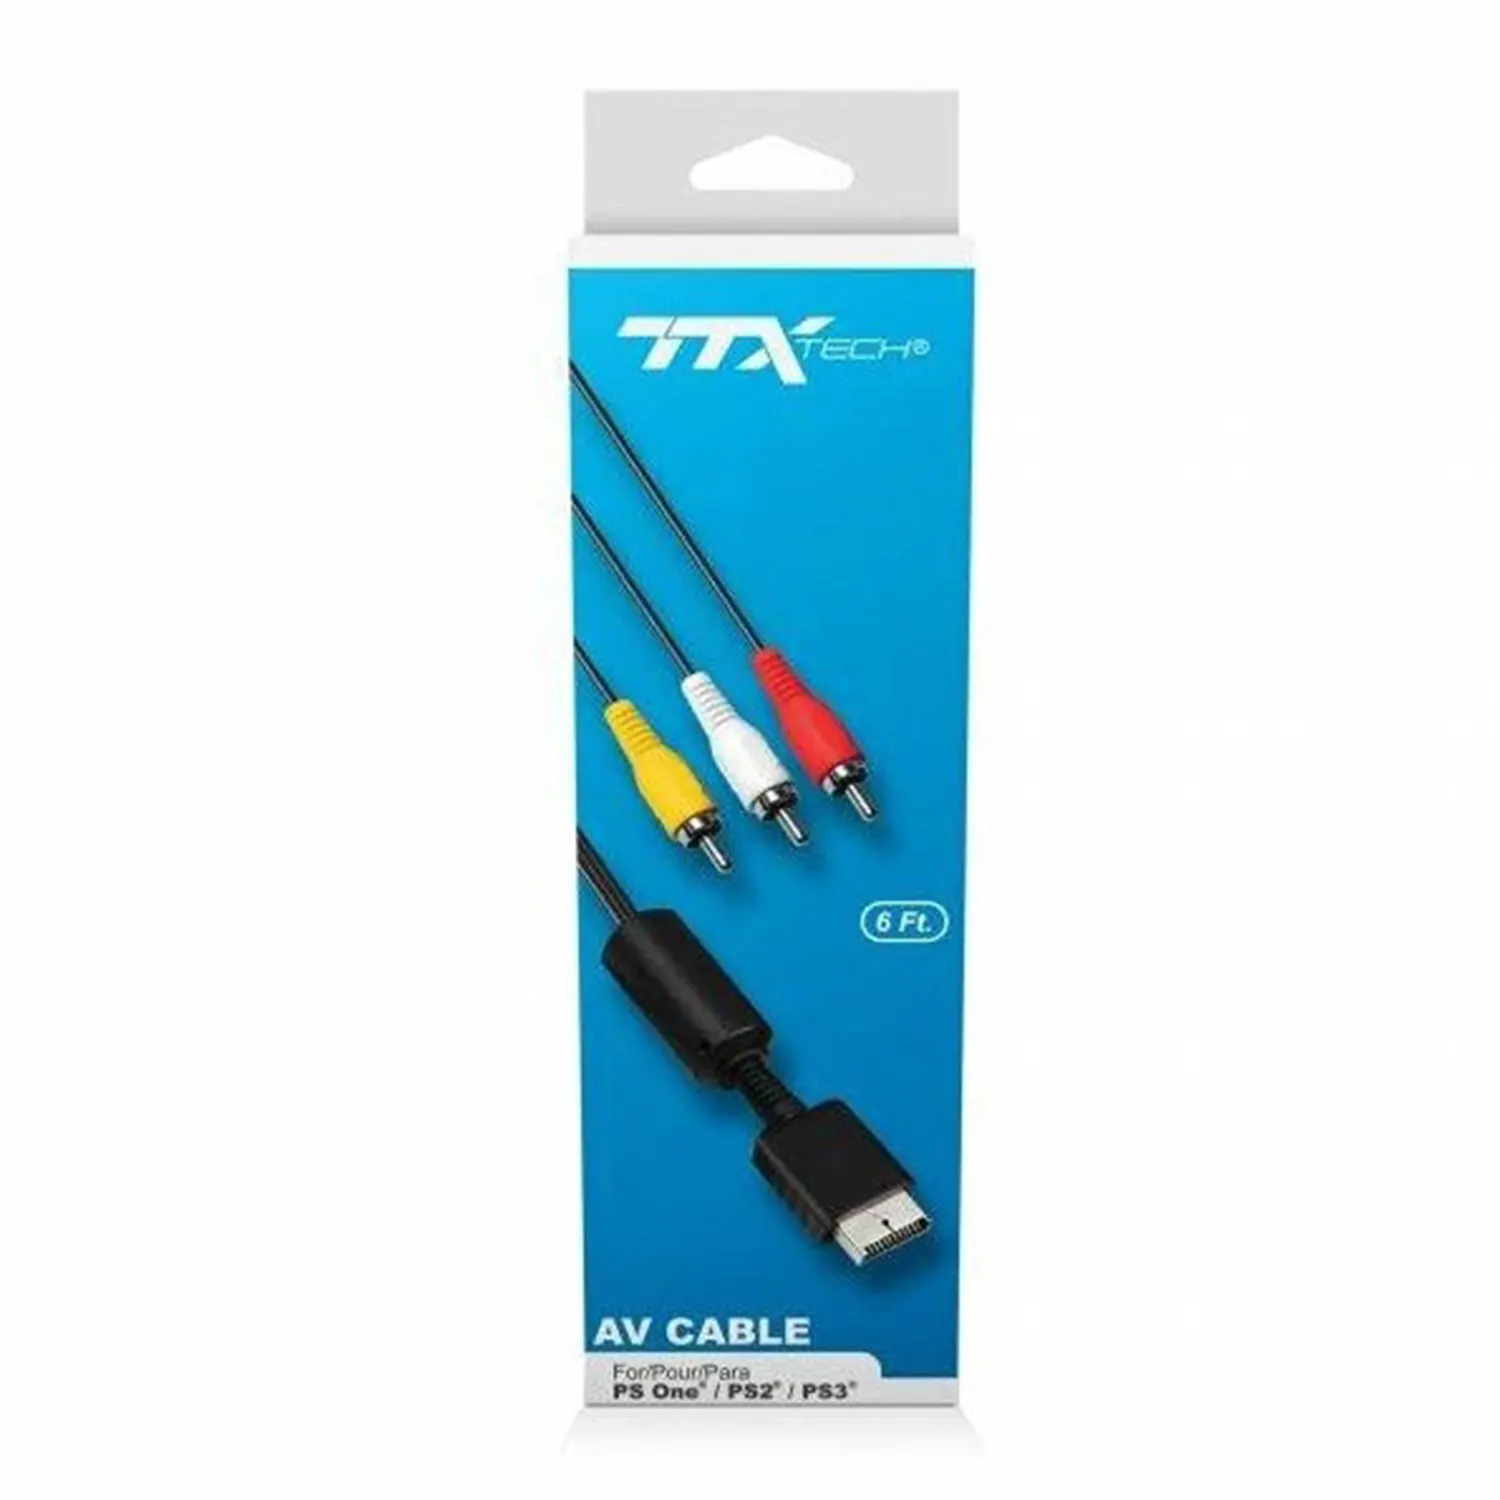 TTX Tech Cable de audio y video para Playstation 1, 2 y 3